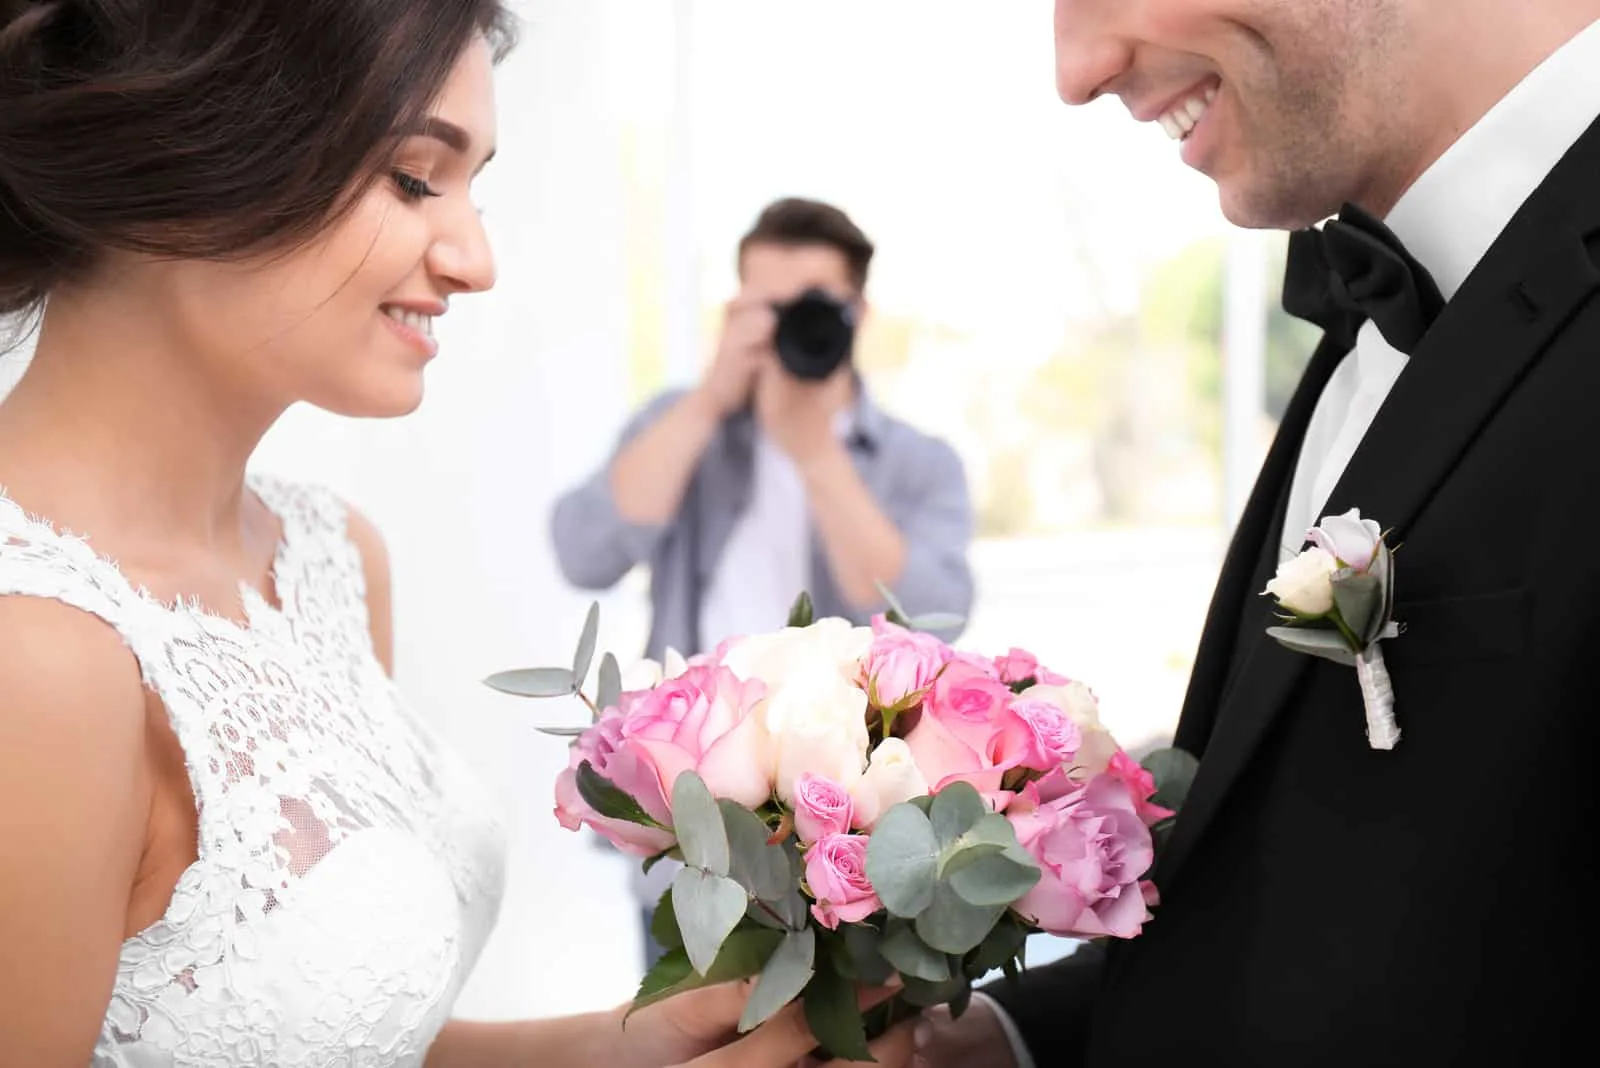 Fotograf macht Foto von Hochzeitspaar